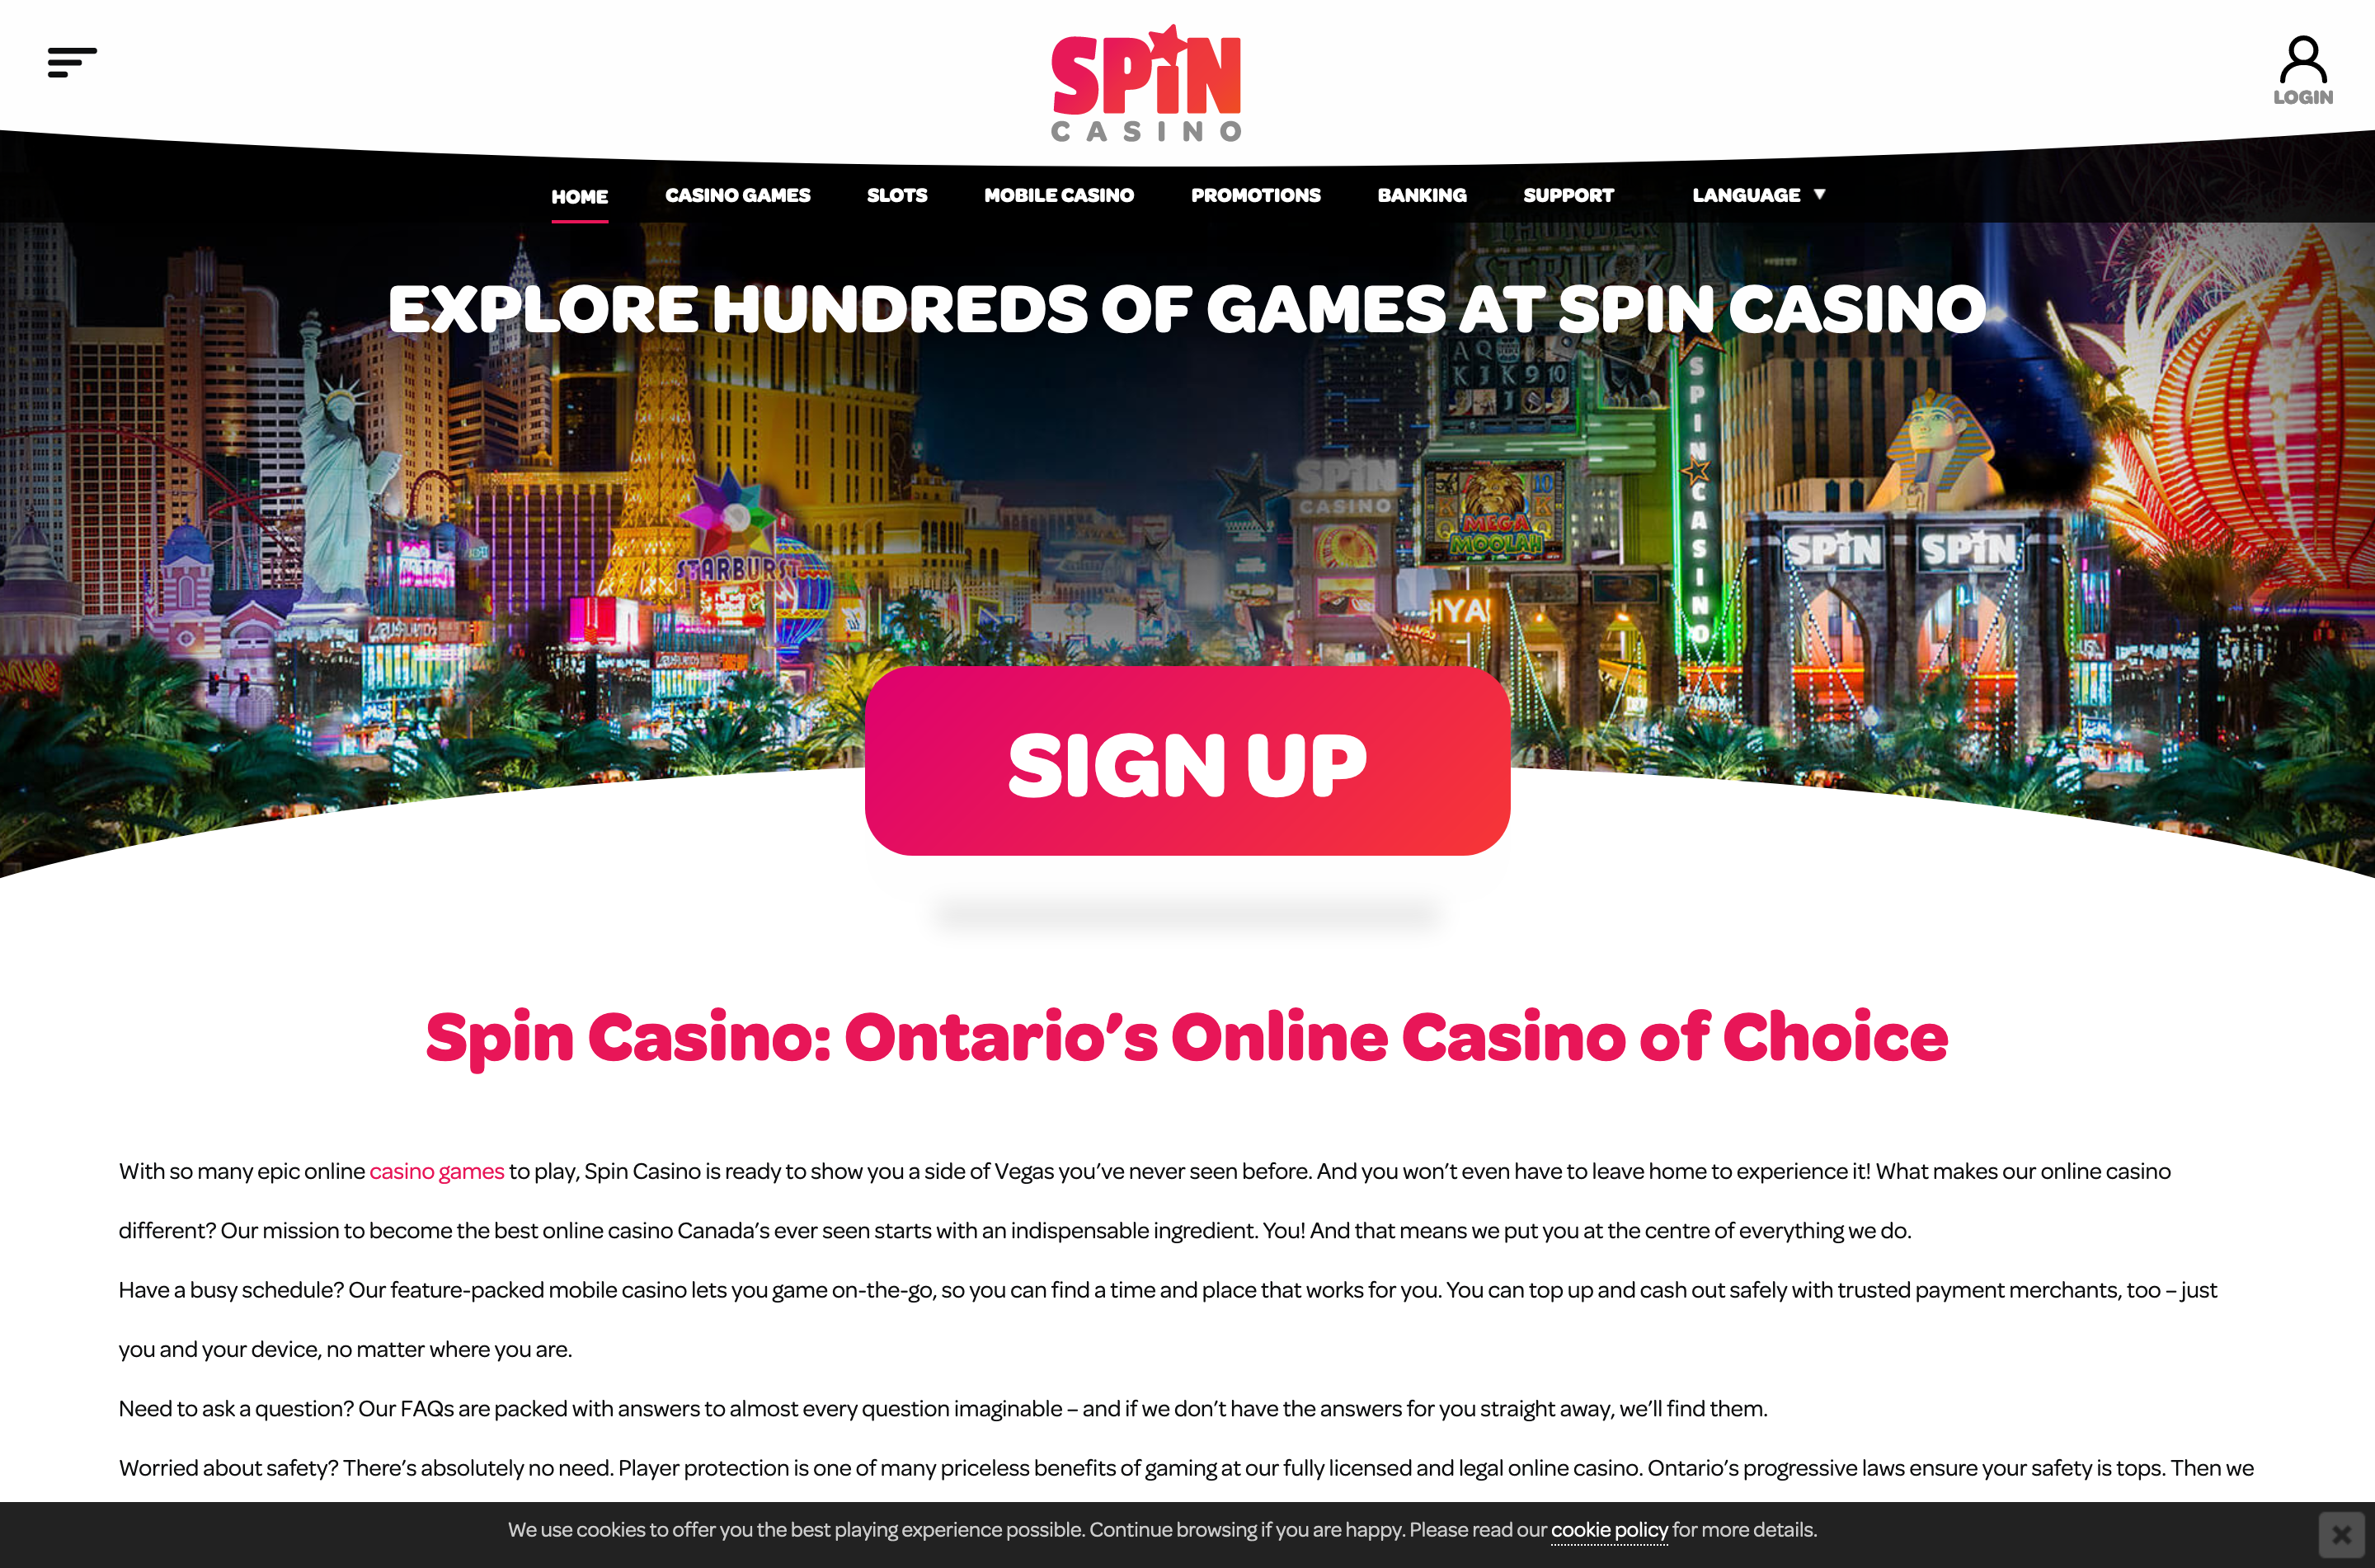 [Reusable] Spin Casino Ontario